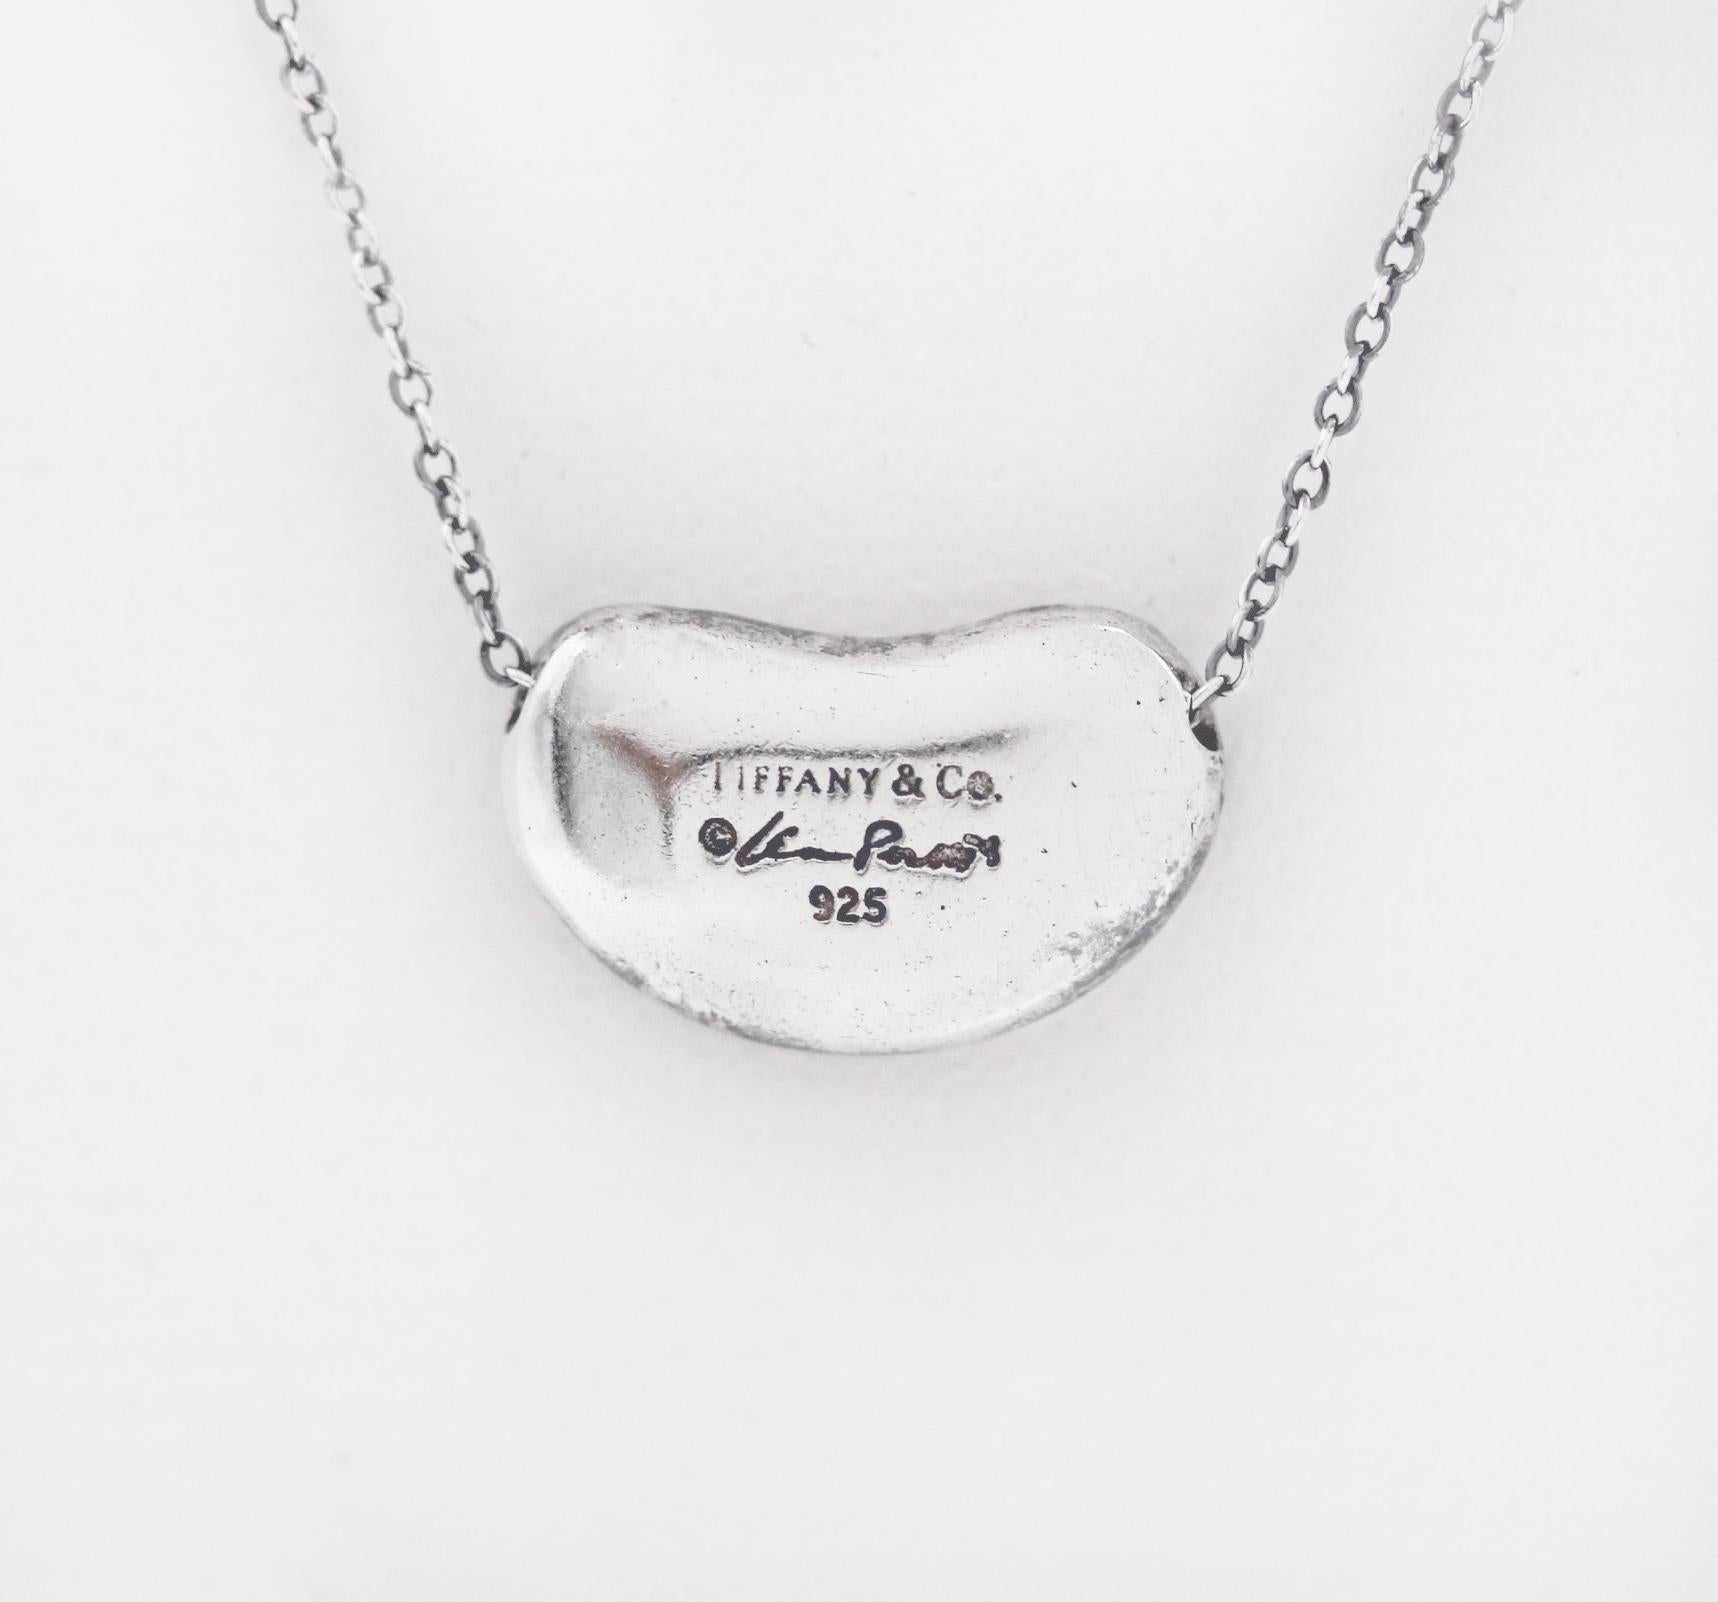 Tiffany & Co.
925 Sterling Silver
Elsa Peretti
Nugget Bean Ball Necklace
Hallmark and Metal:
Tiffany Co. / Peretti / 925
Chain 16